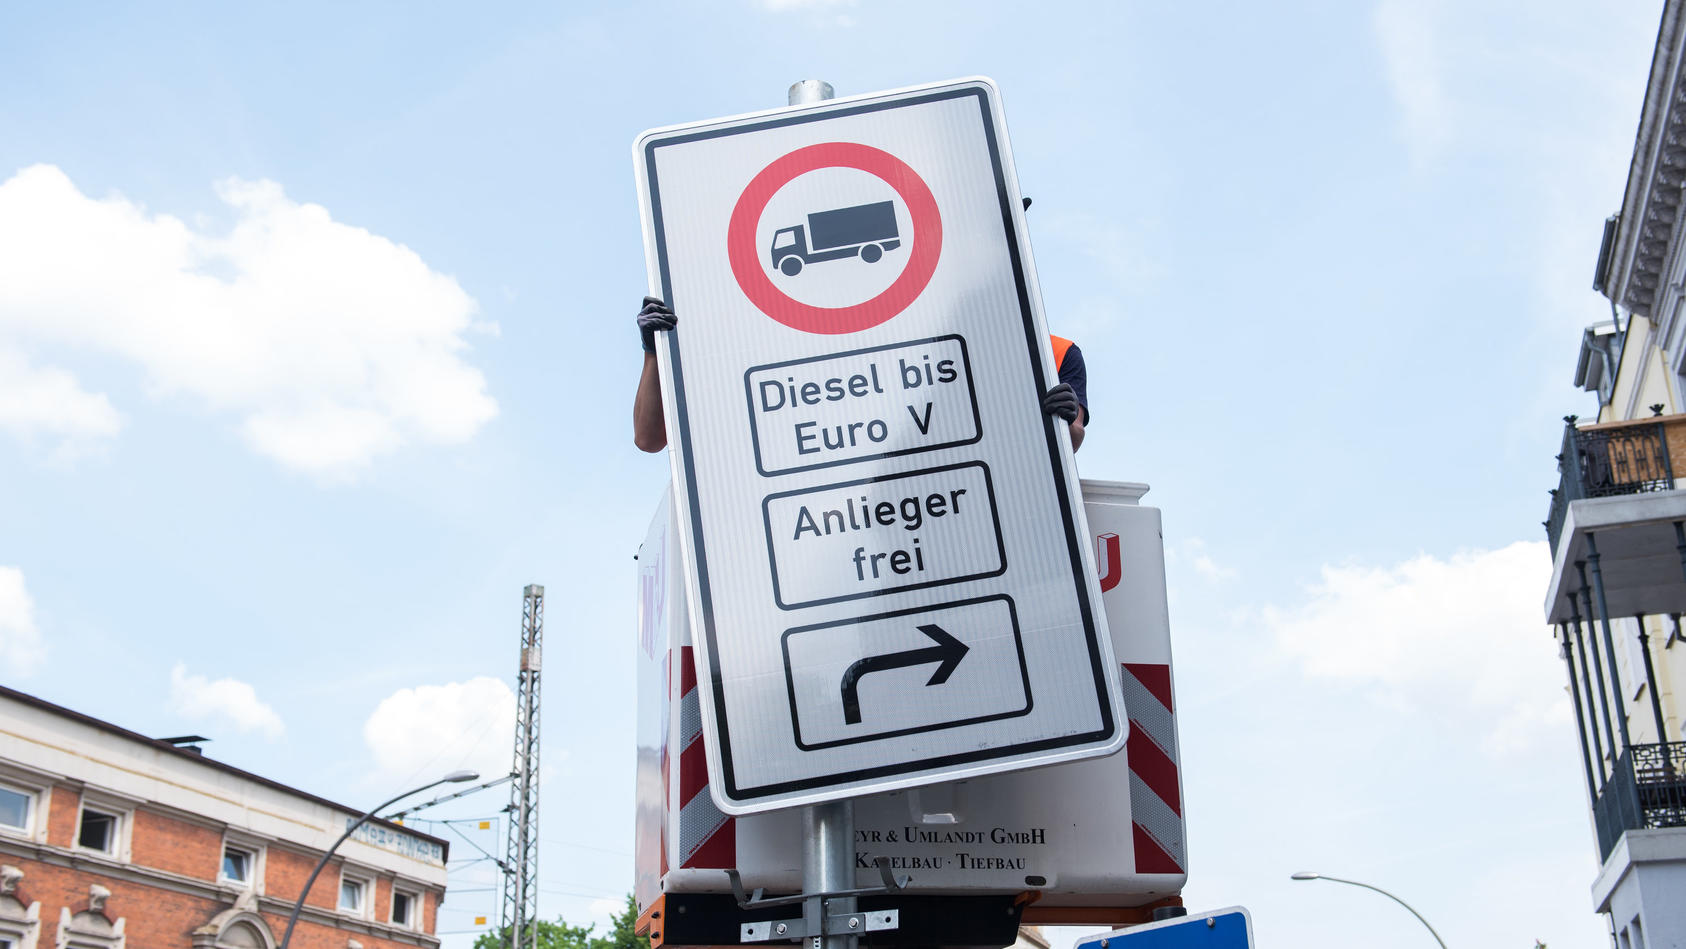 15.05.2018, Hamburg: Ein Fahrverbotsschild für Lastwagen mit Diesel-Motor bis Euro 5 wird an der Max-Brauer-Allee aufgehängt. Zur Luftreinhaltung werden auf der Stresemannstraße und der Max-Brauer-Allee Fahrverbote eingeführt. Noch vor dem Ende des M